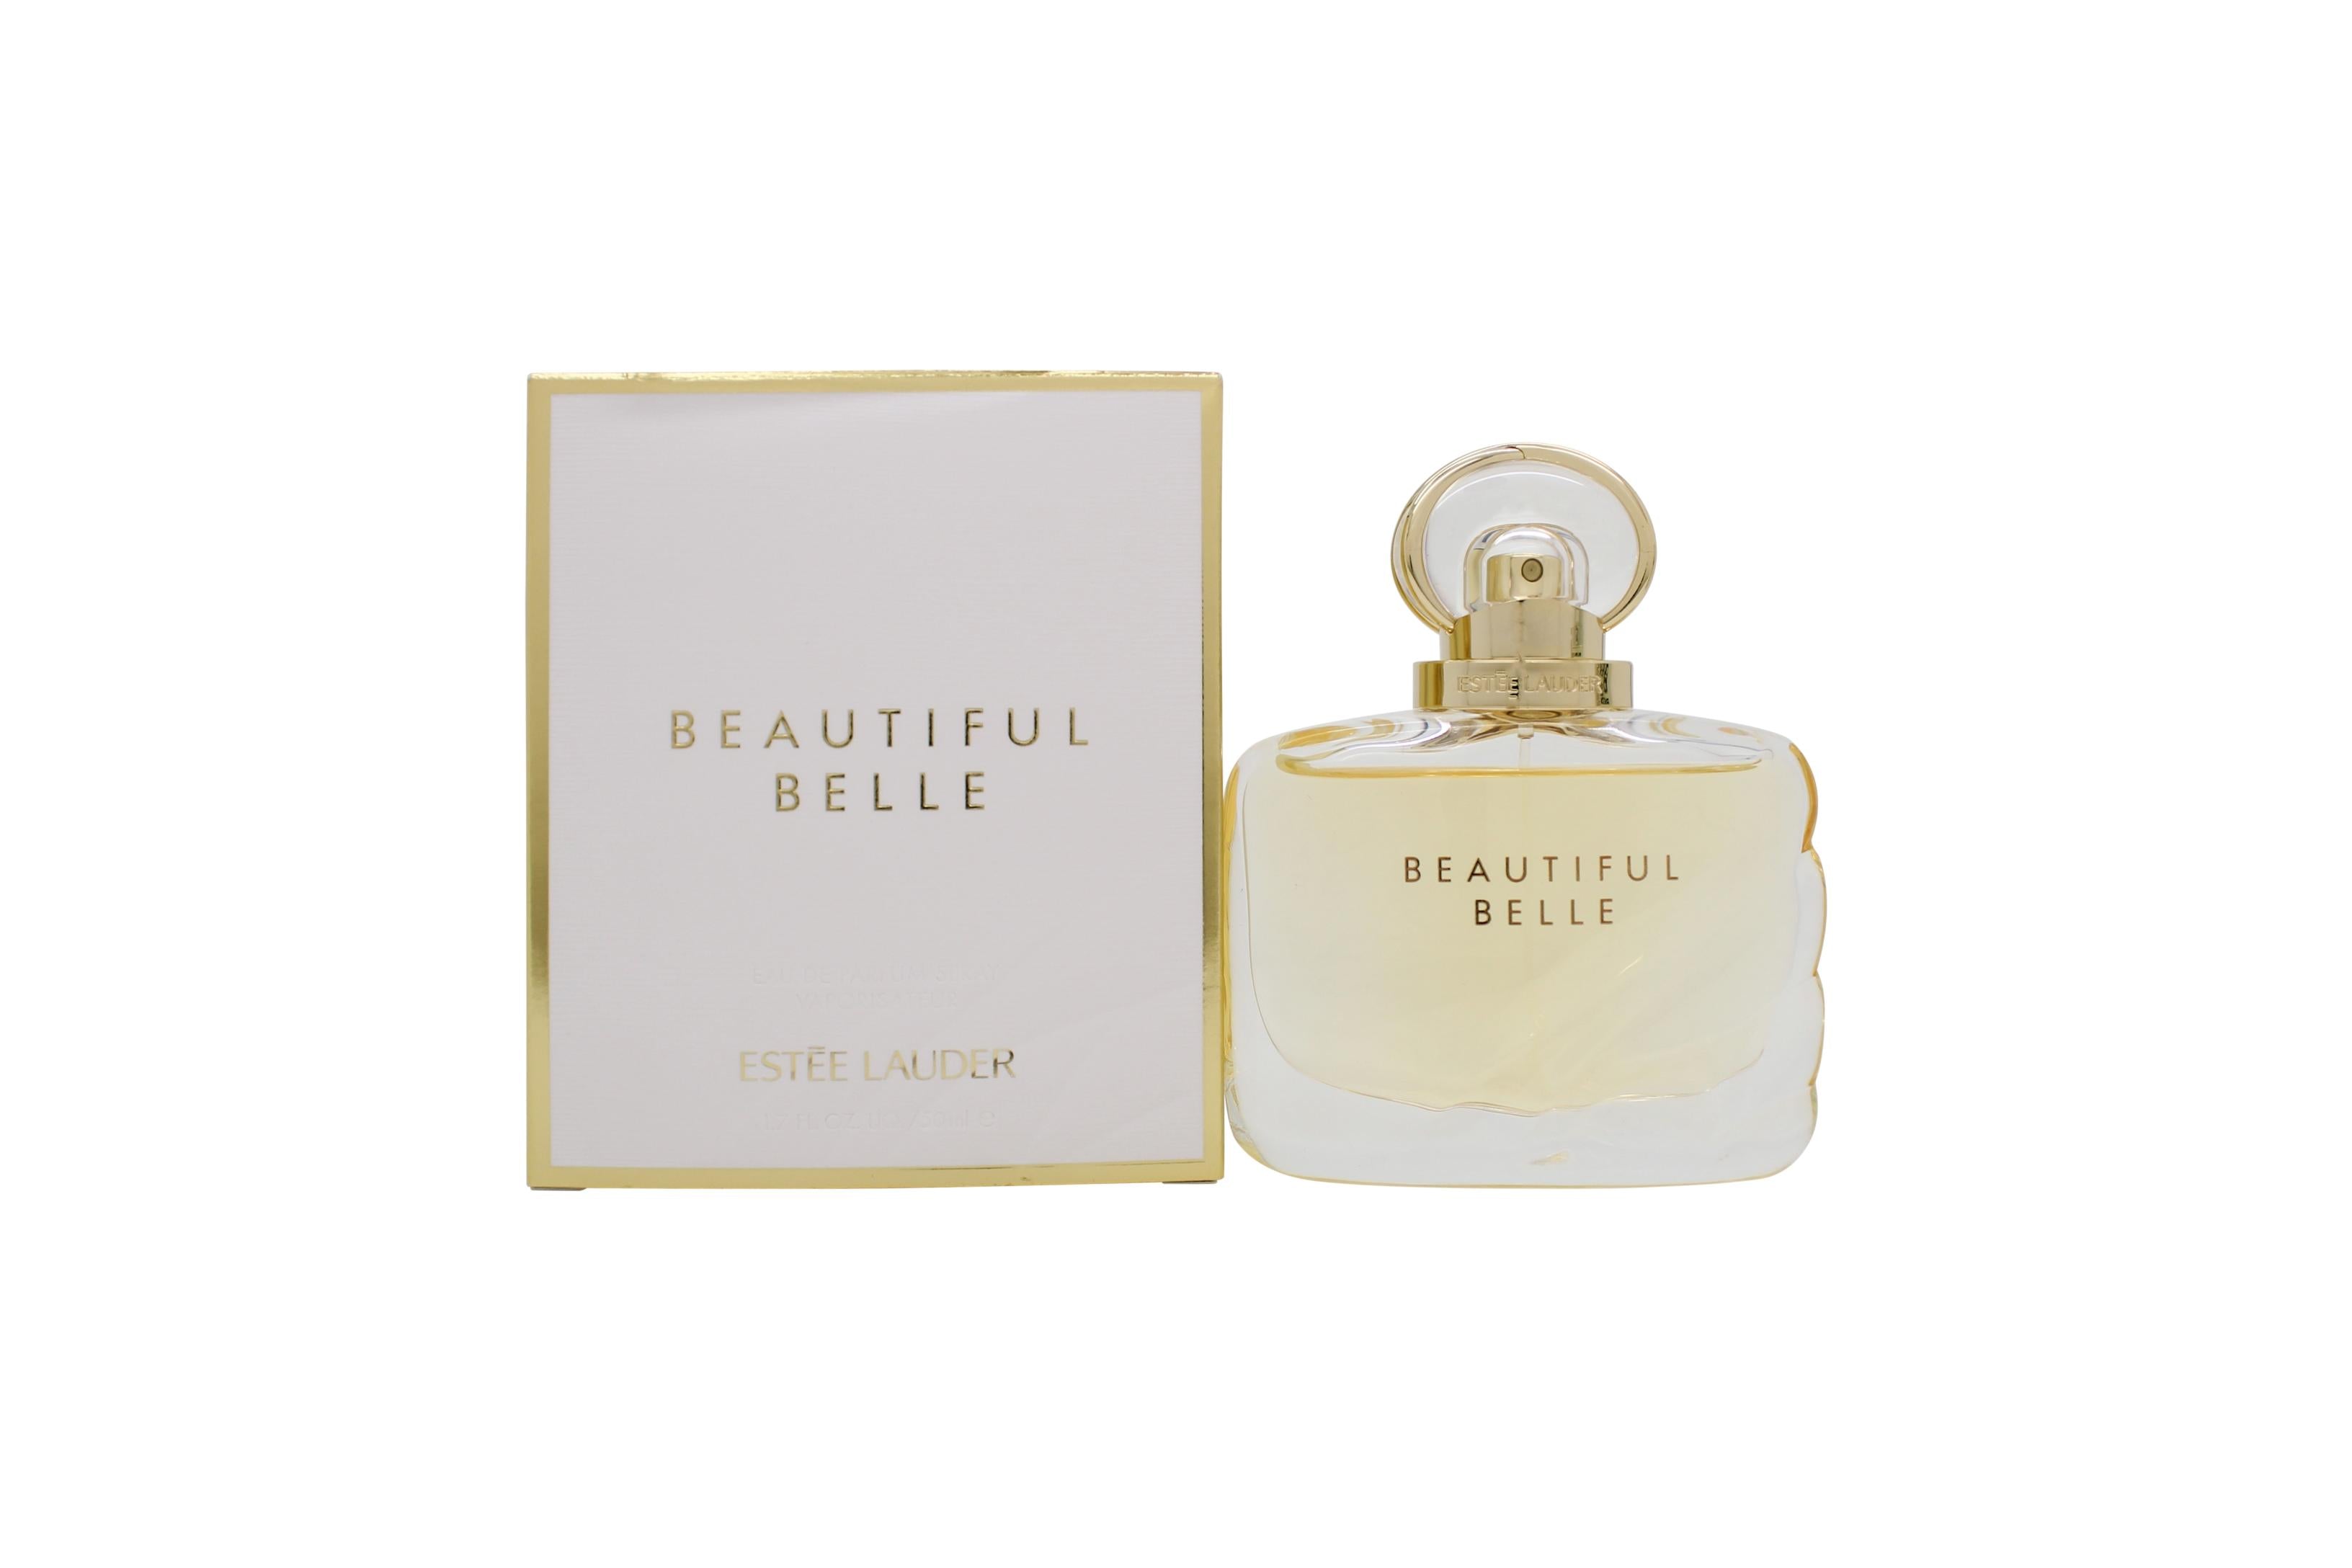 View Estée Lauder Beautiful Belle Eau de Parfum 50ml Spray information